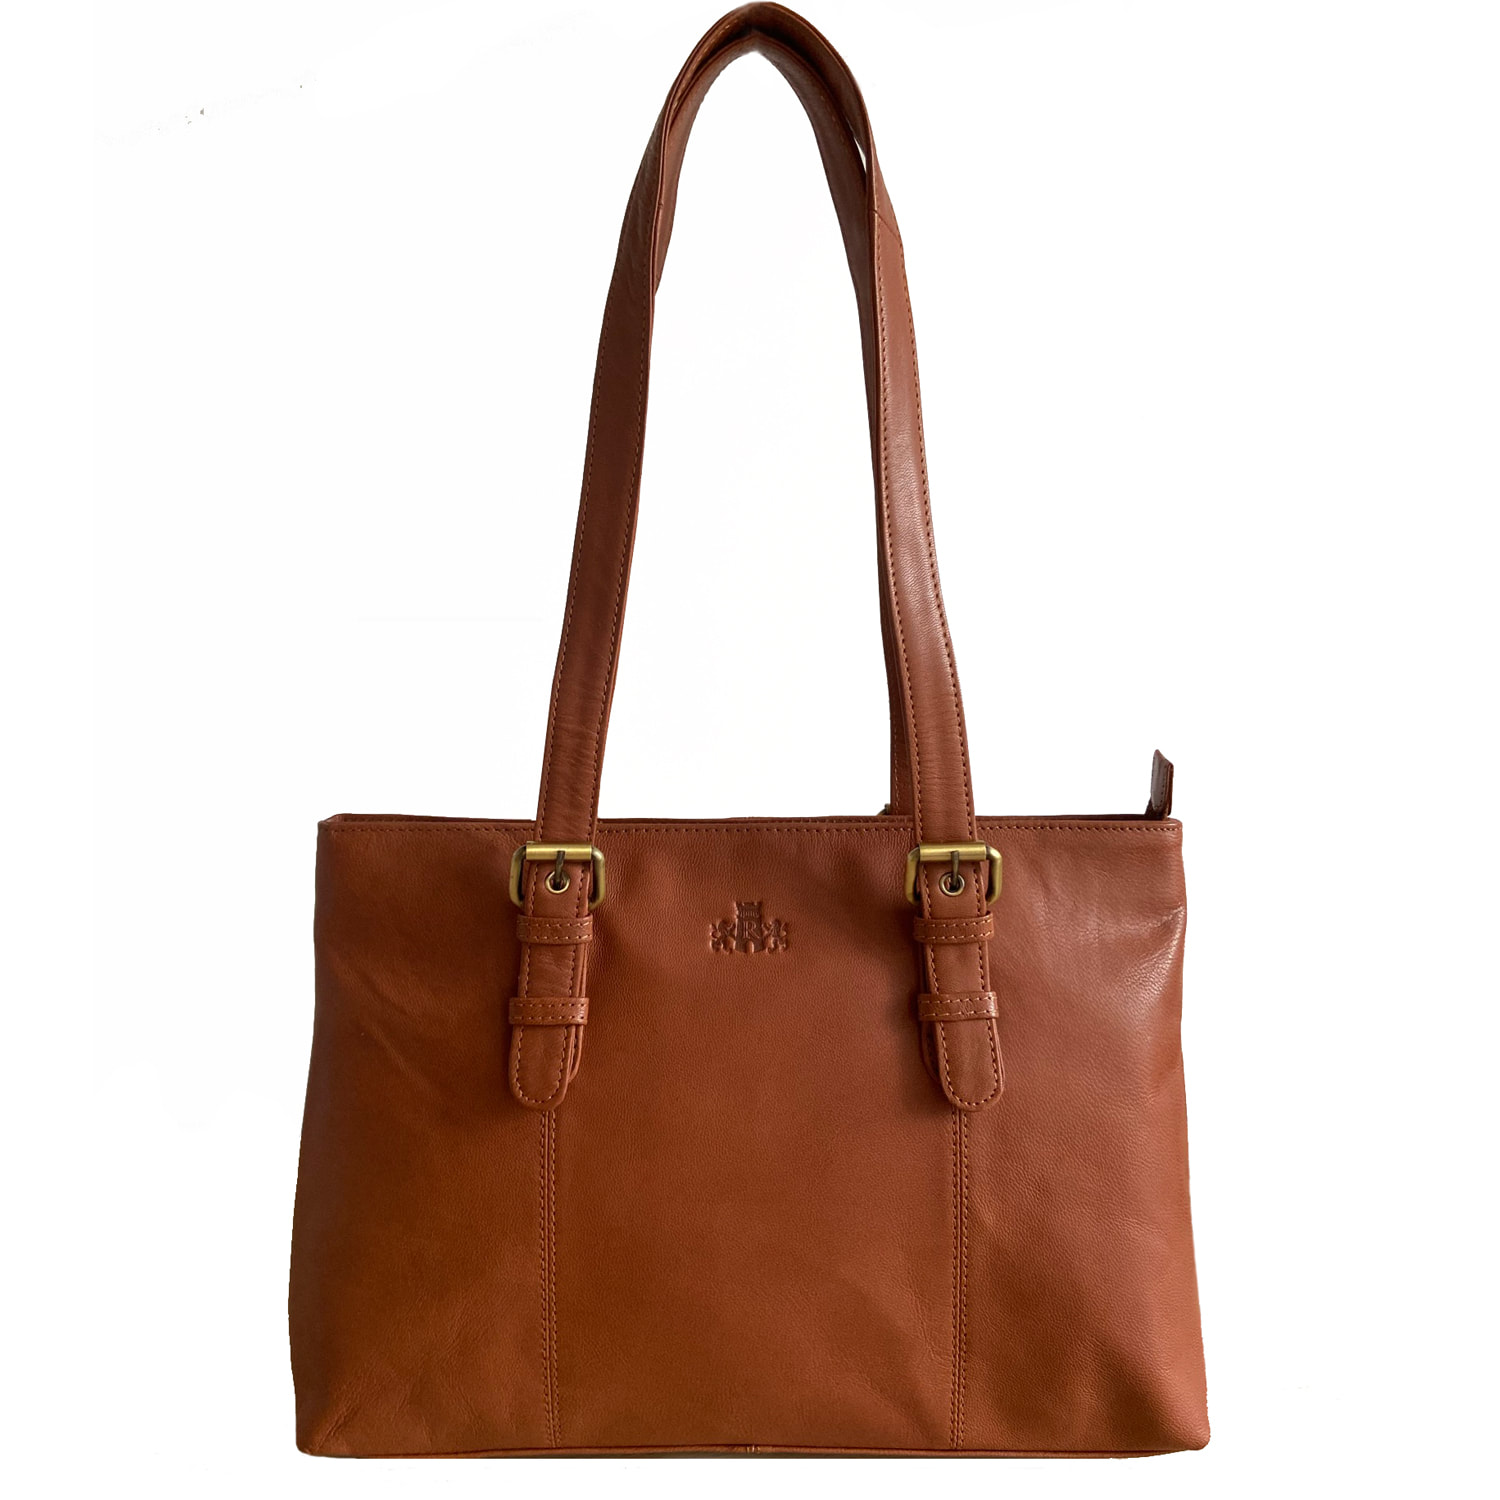 Rowallan Tan Leather Shoulder Bag, Work Bag